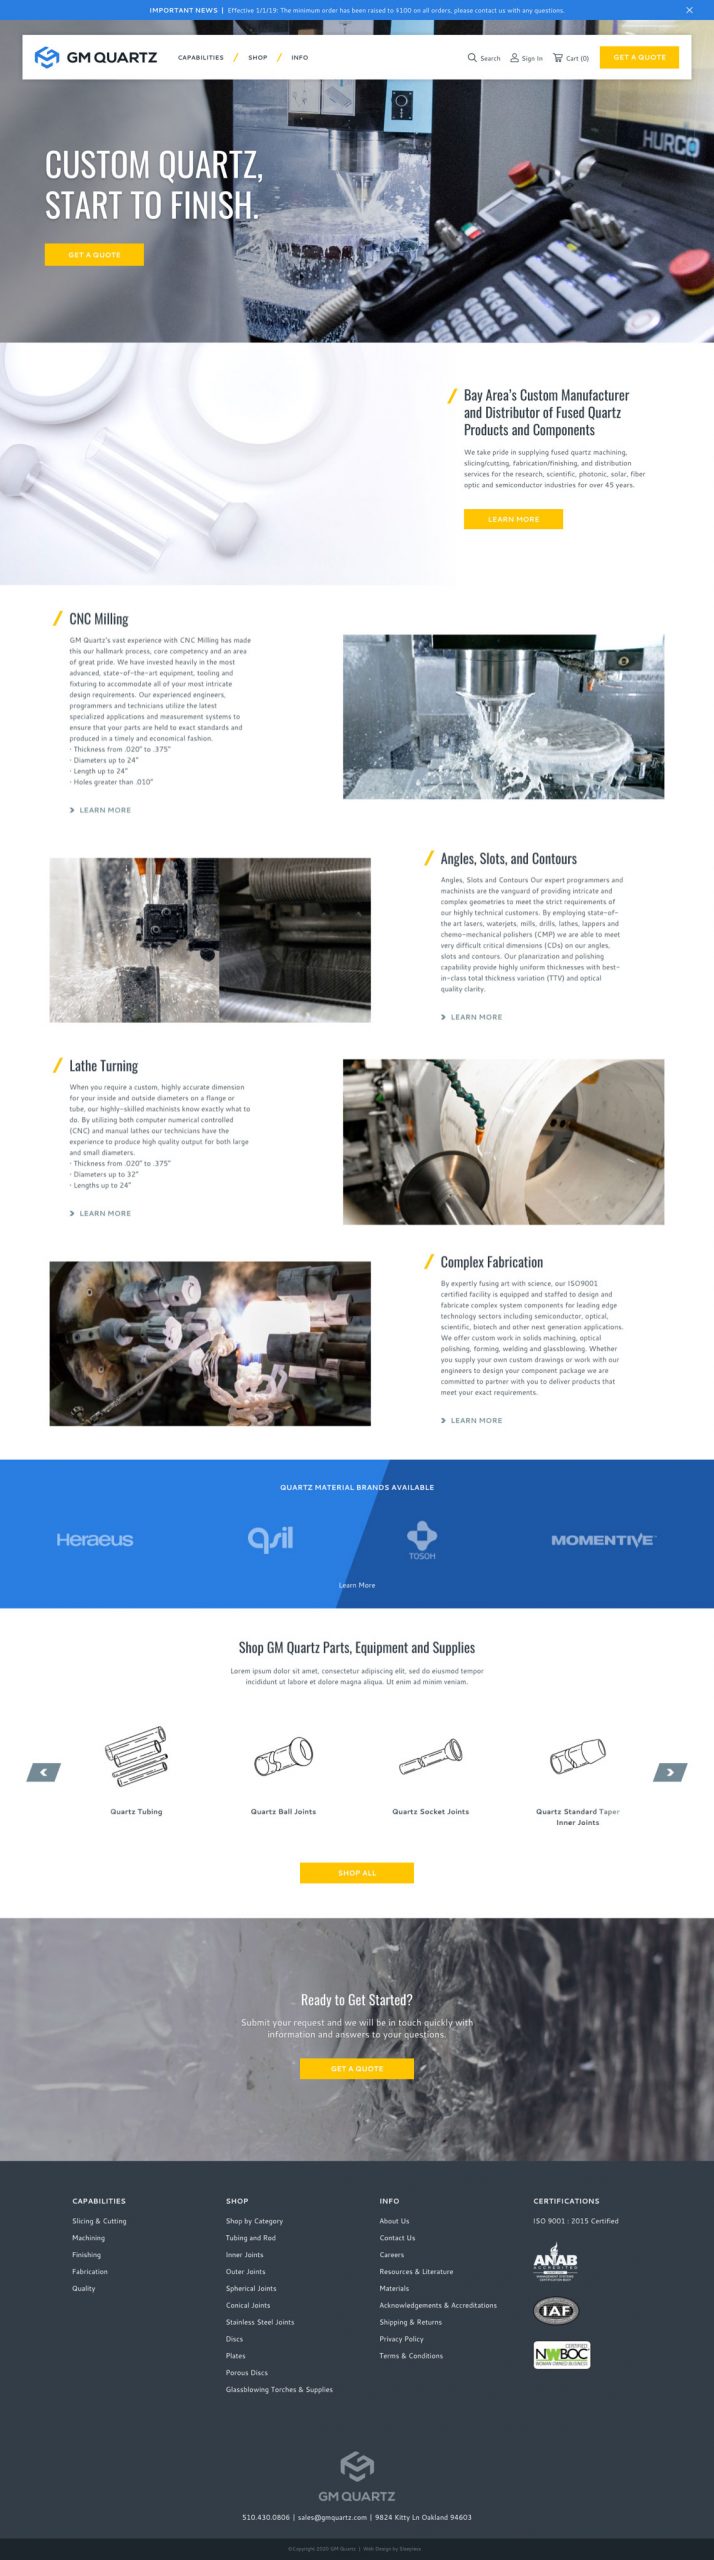 GM Quartz - Homepage